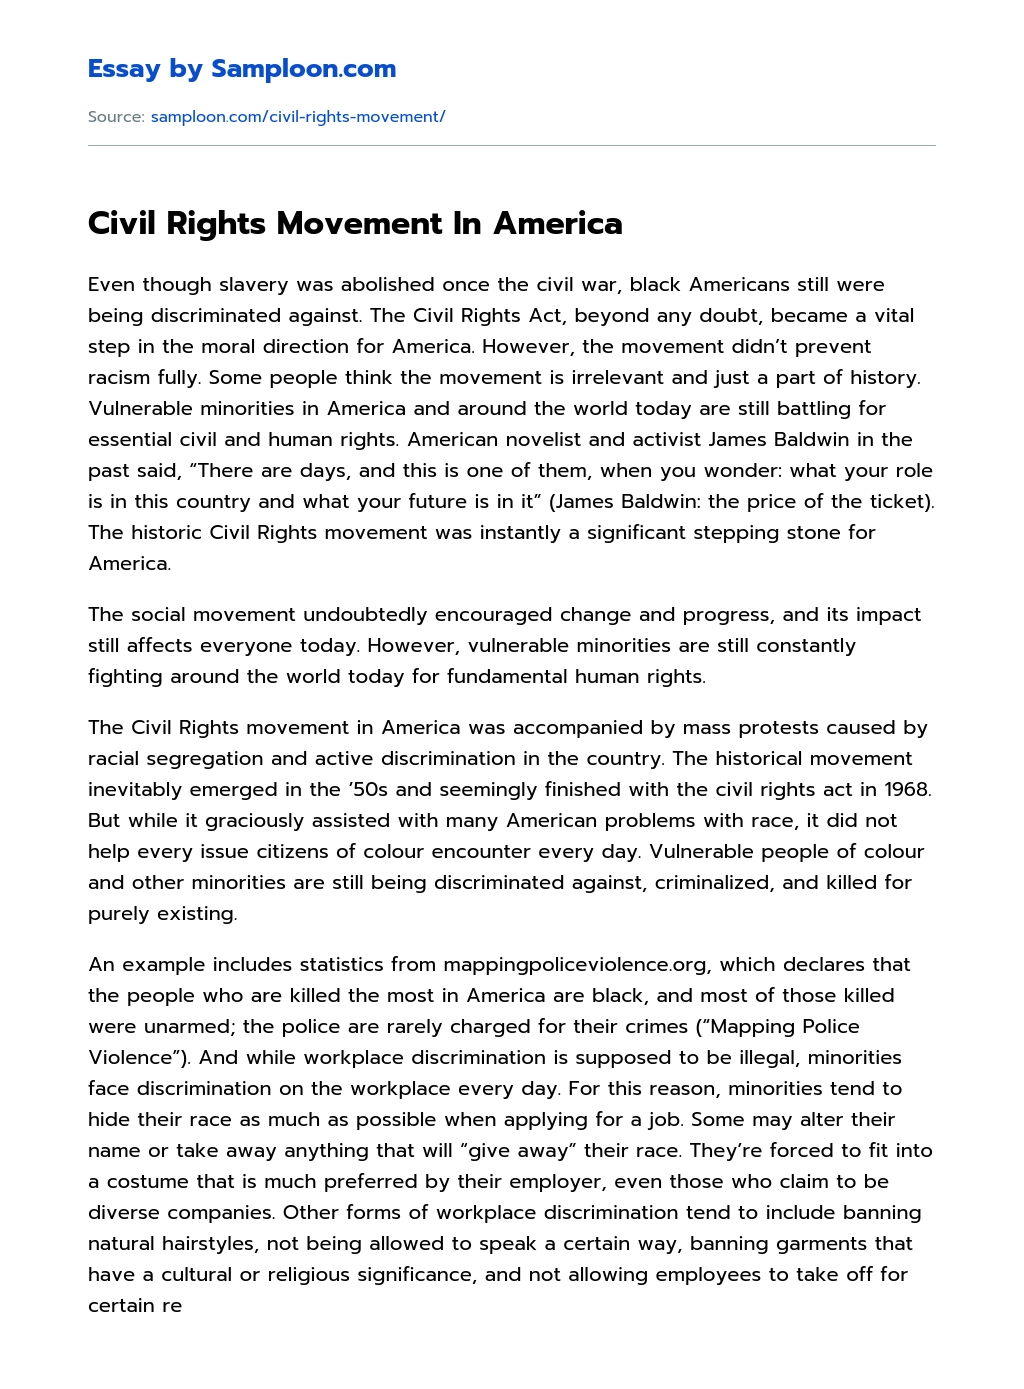 Civil Rights Movement In America essay